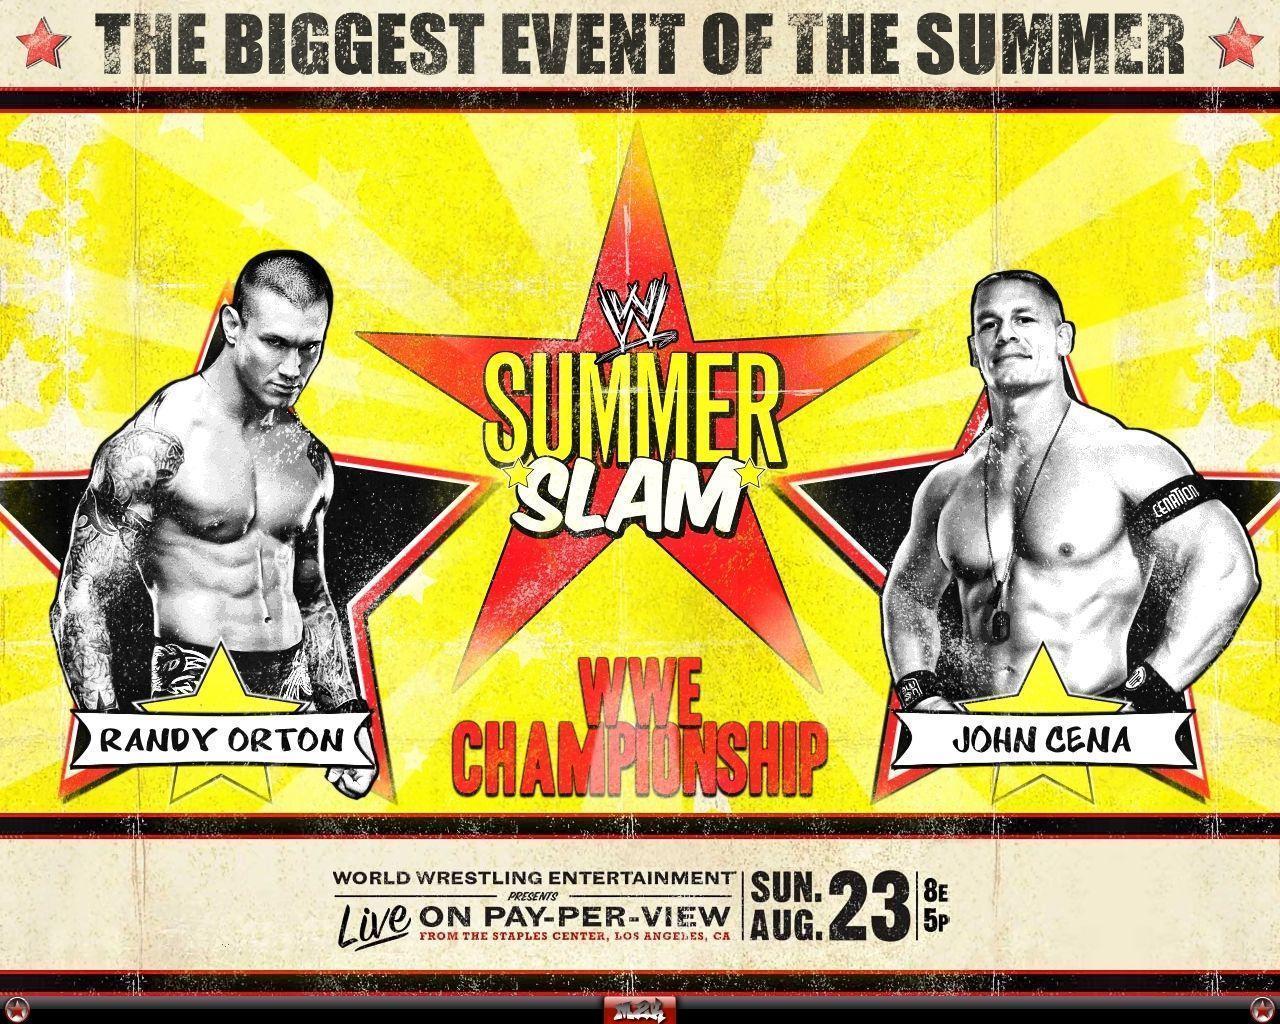 SummerSlam 09 vs Cena